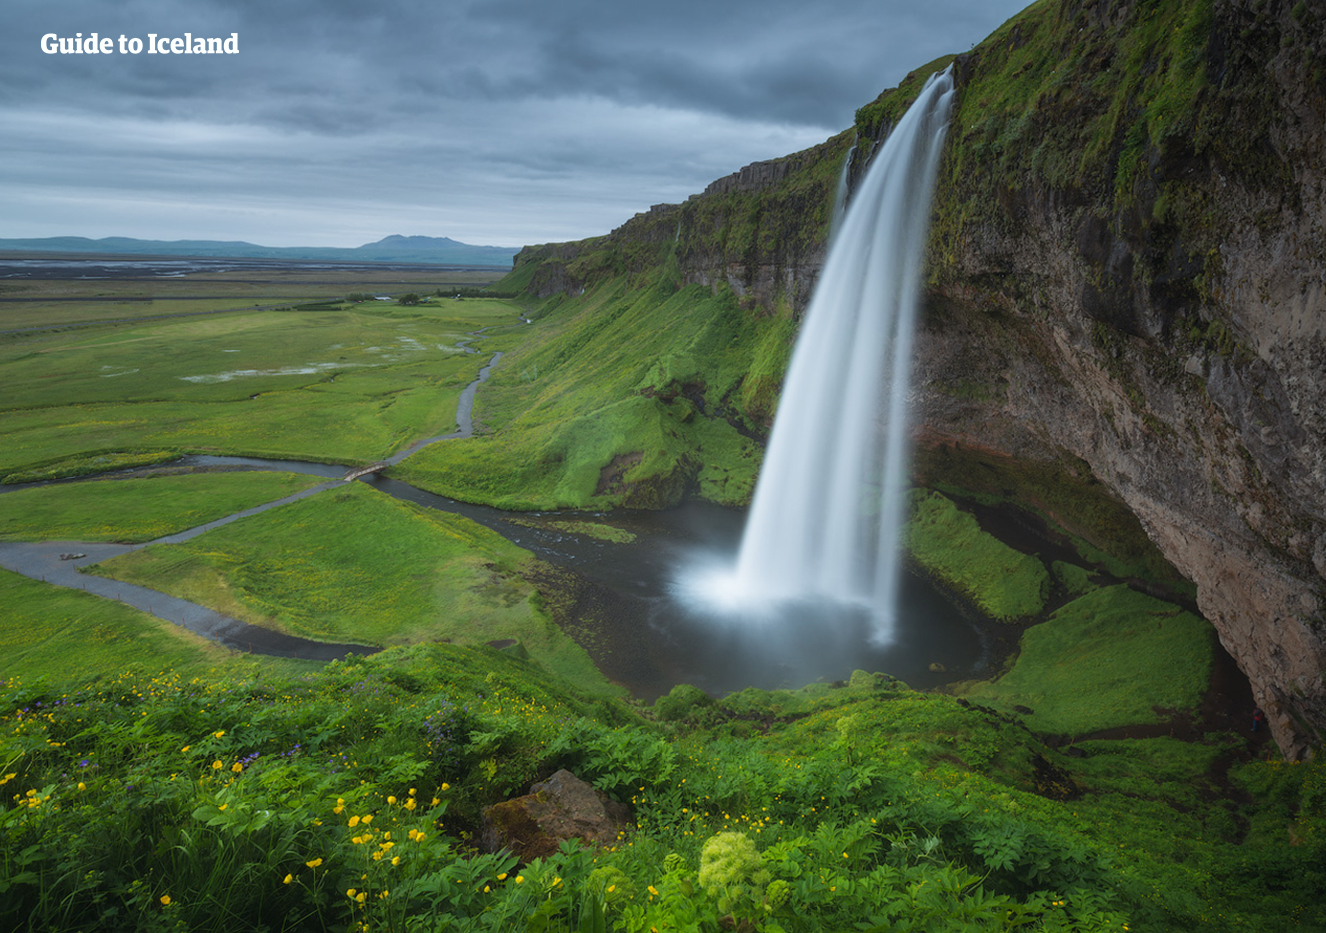 Wodospad Seljalandsfoss na niezwykle popularnej trasie turystycznej na południowym wybrzeżu wzdłuż słynnej obwodnicy Islandii.